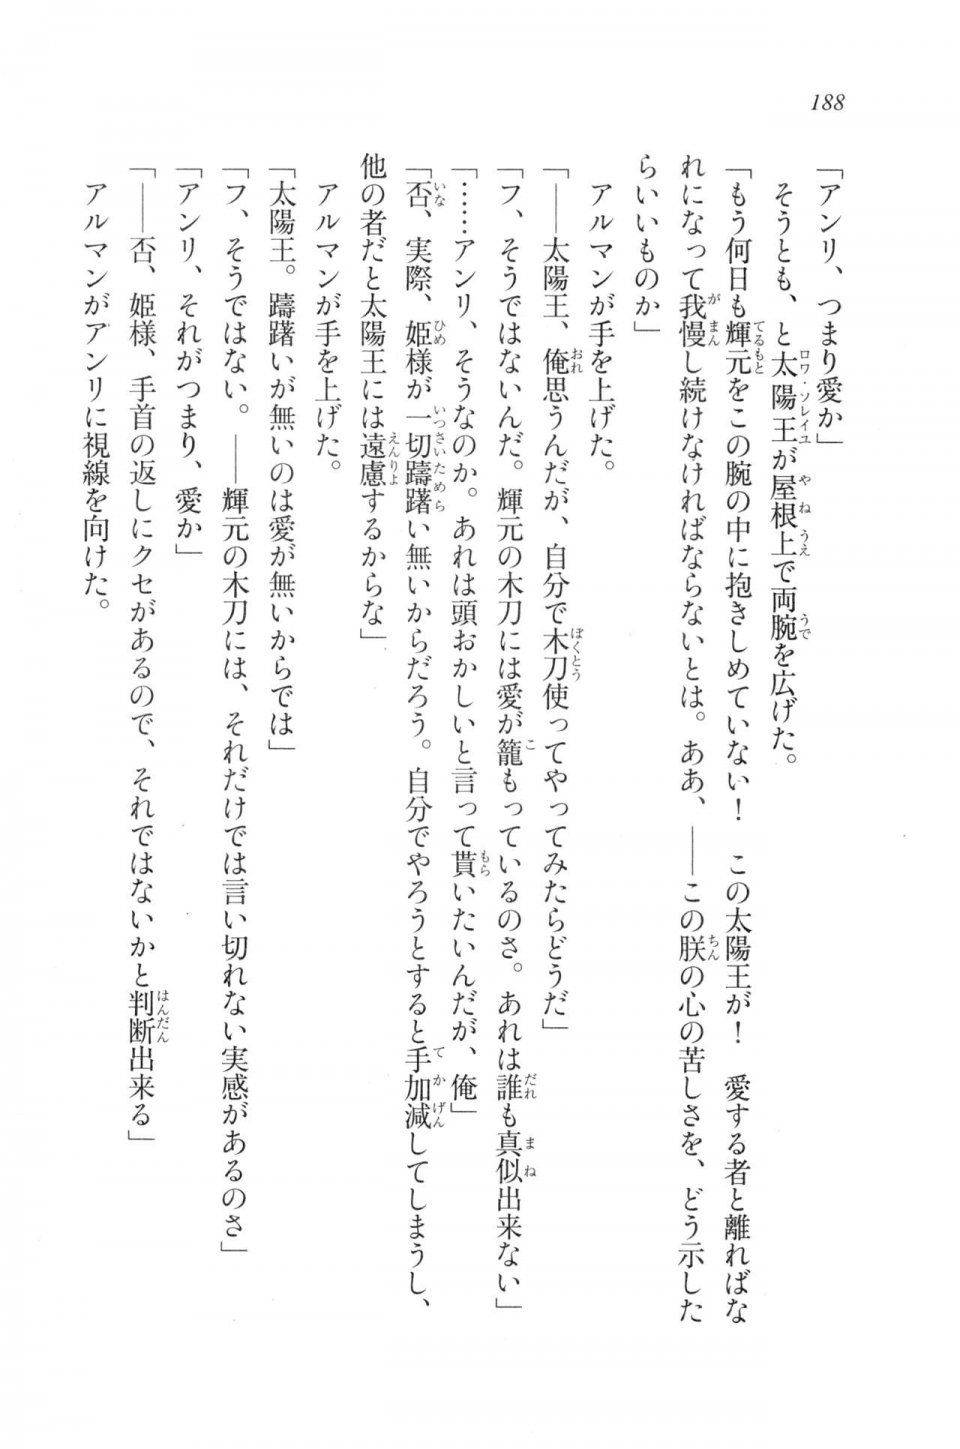 Kyoukai Senjou no Horizon LN Vol 20(8B) - Photo #188